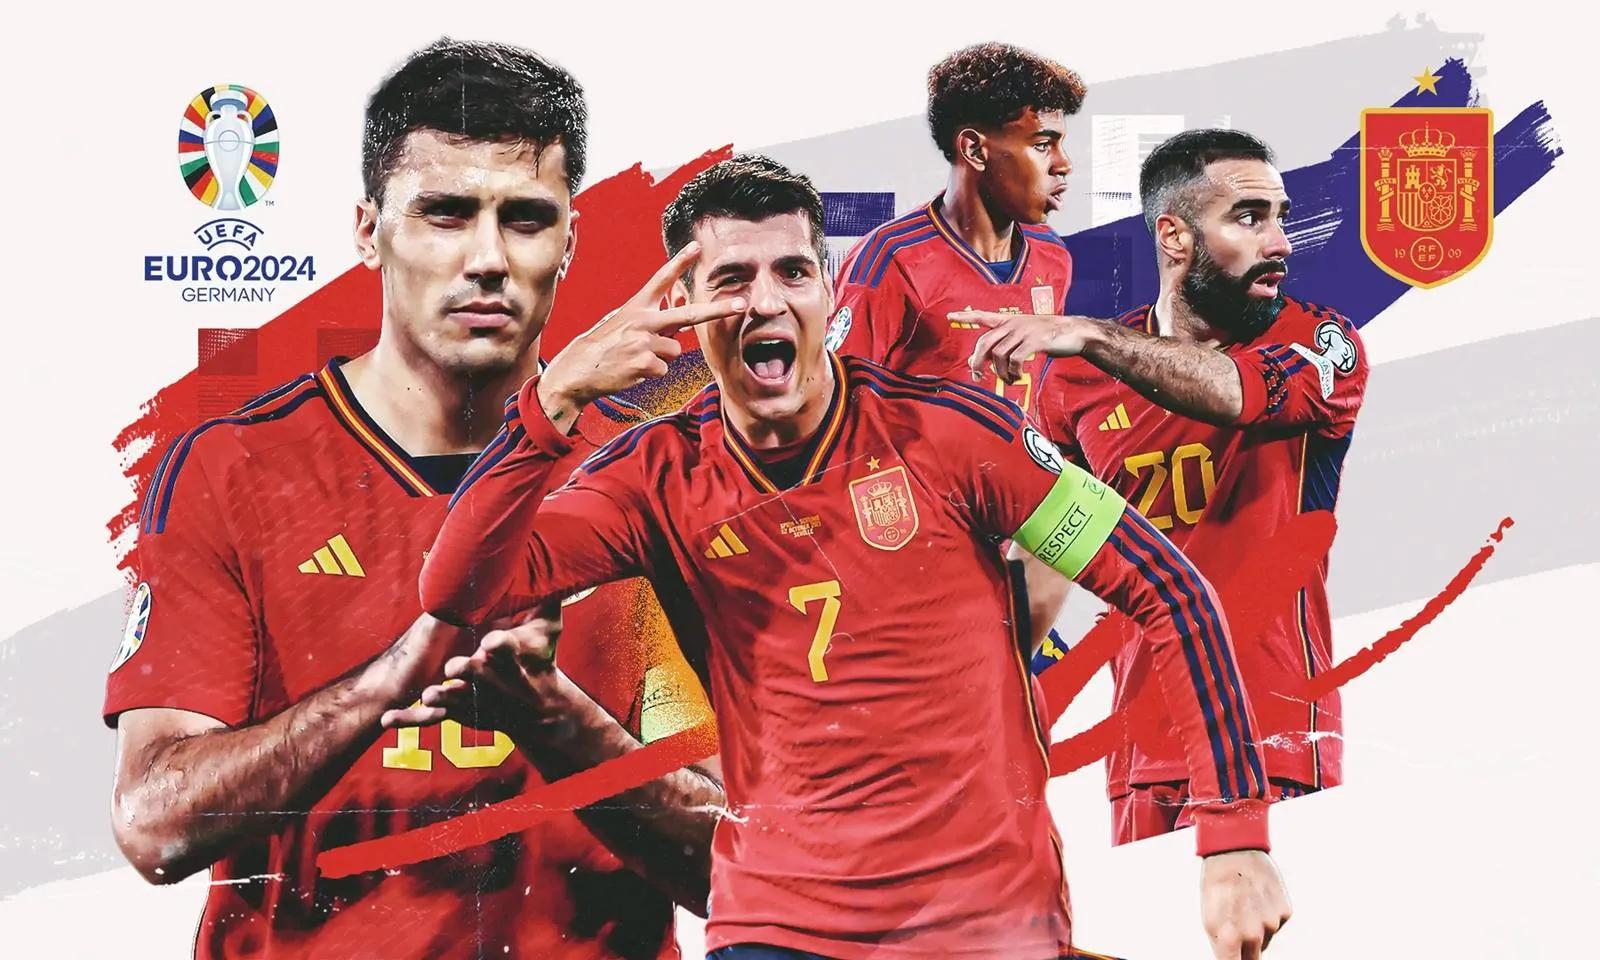 Đội hình dự kiến tuyển Tây Ban Nha tại EURO 2024: Canh bạc Pedri | Nỗi lo hàng tiền đạo